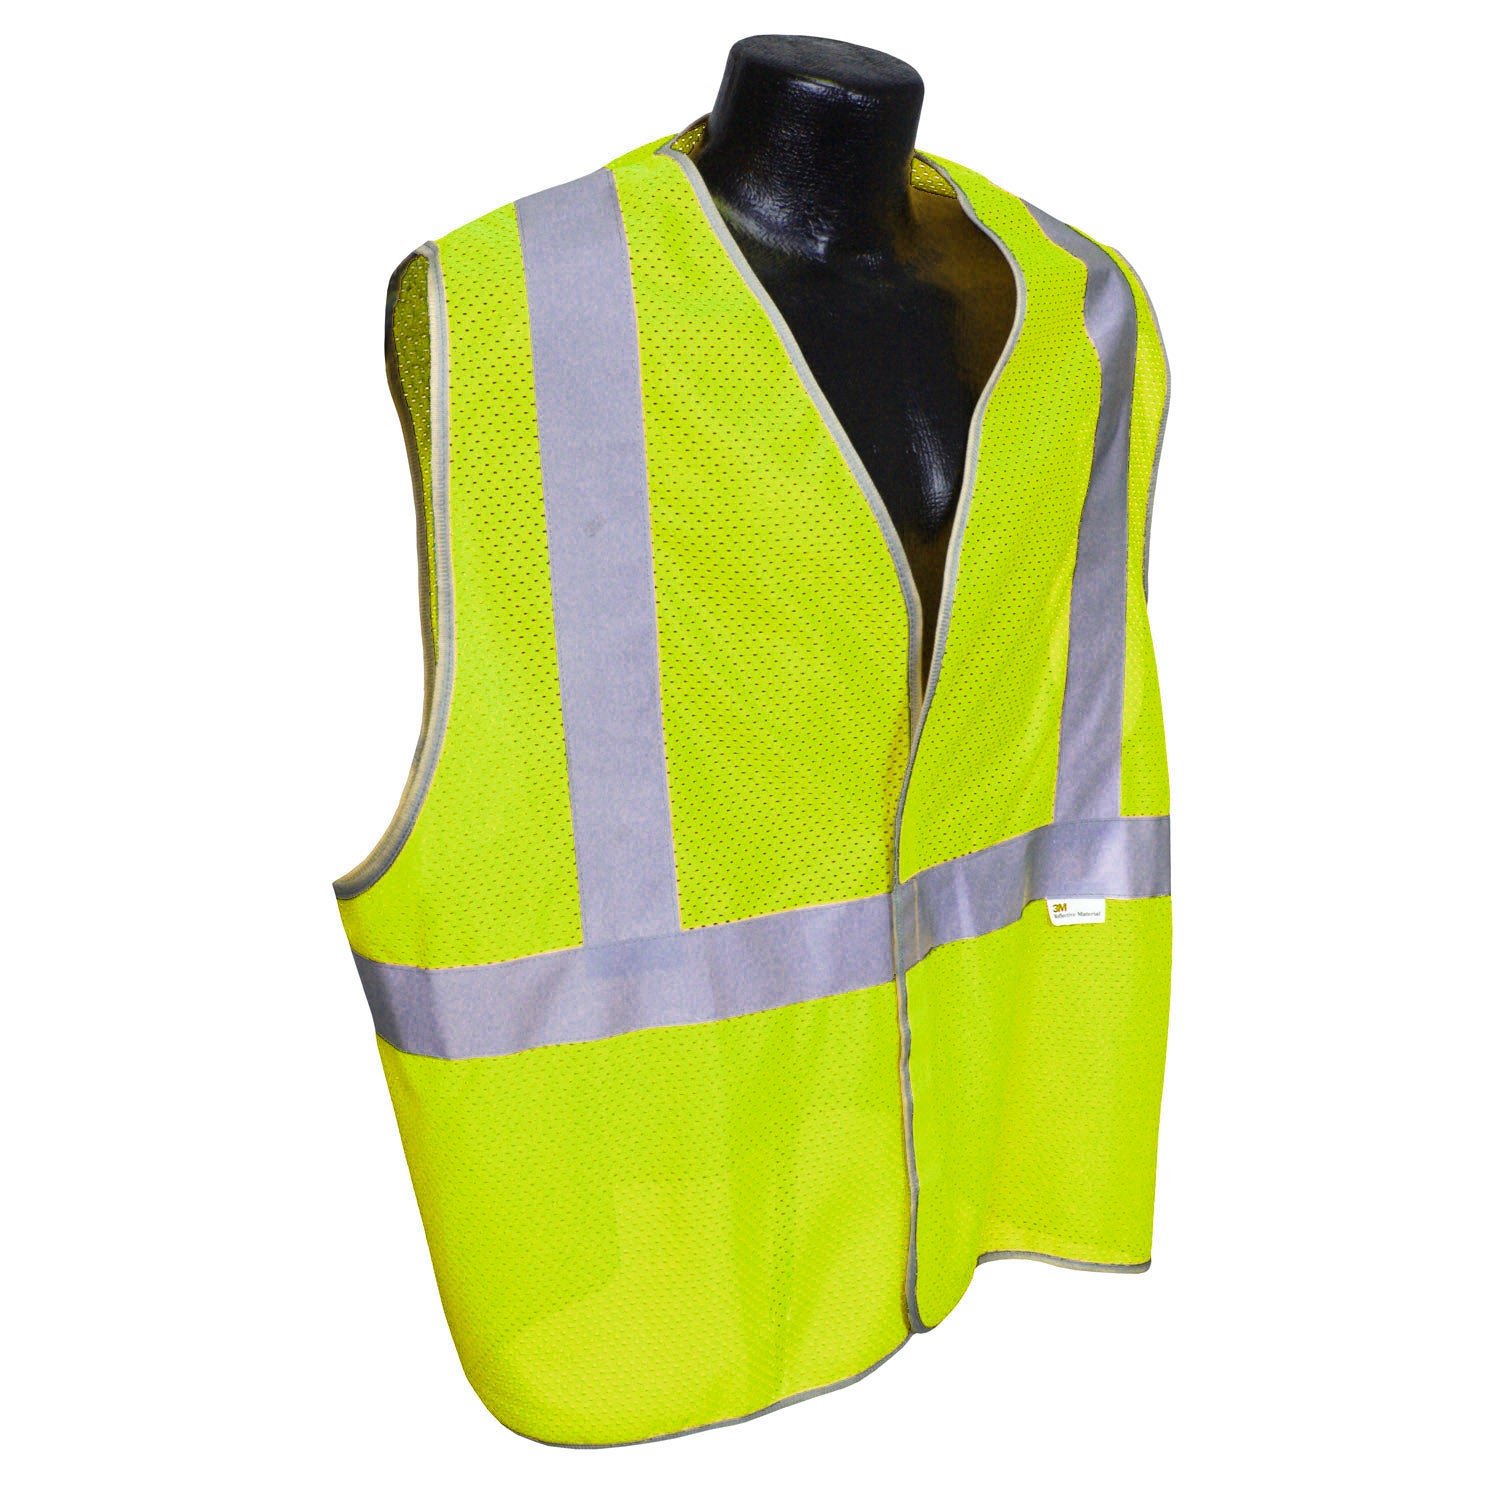 5ANSI-PC Type R Class 2 Safety Vest